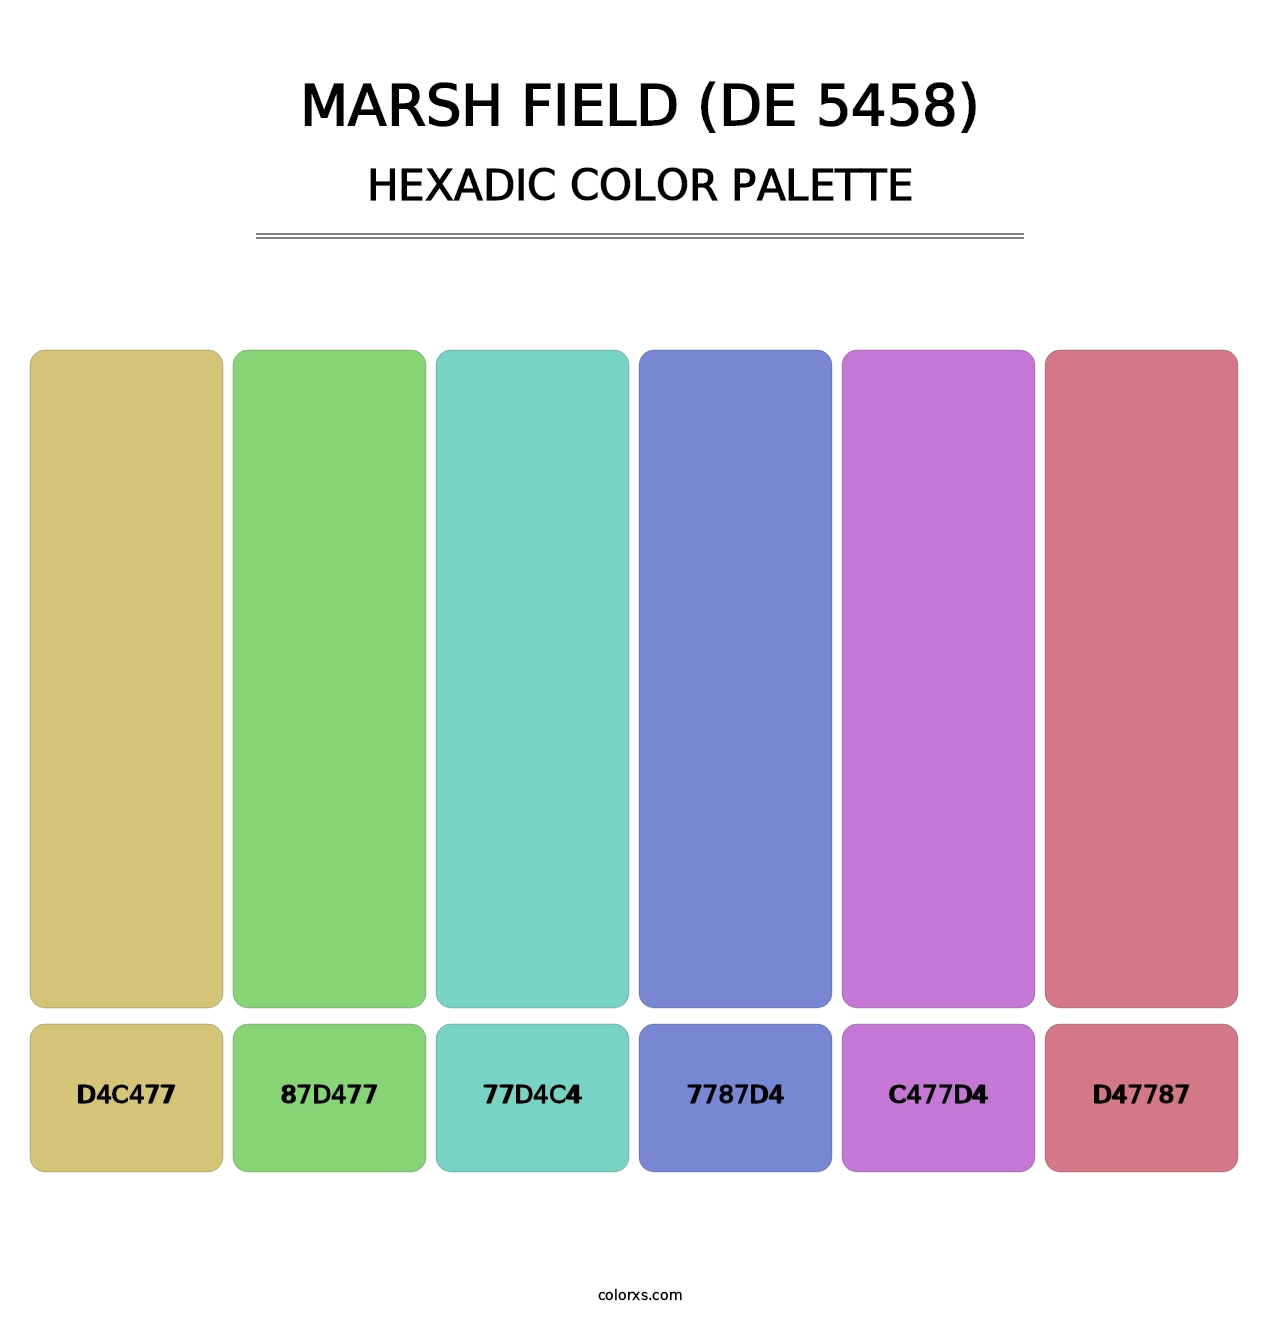 Marsh Field (DE 5458) - Hexadic Color Palette